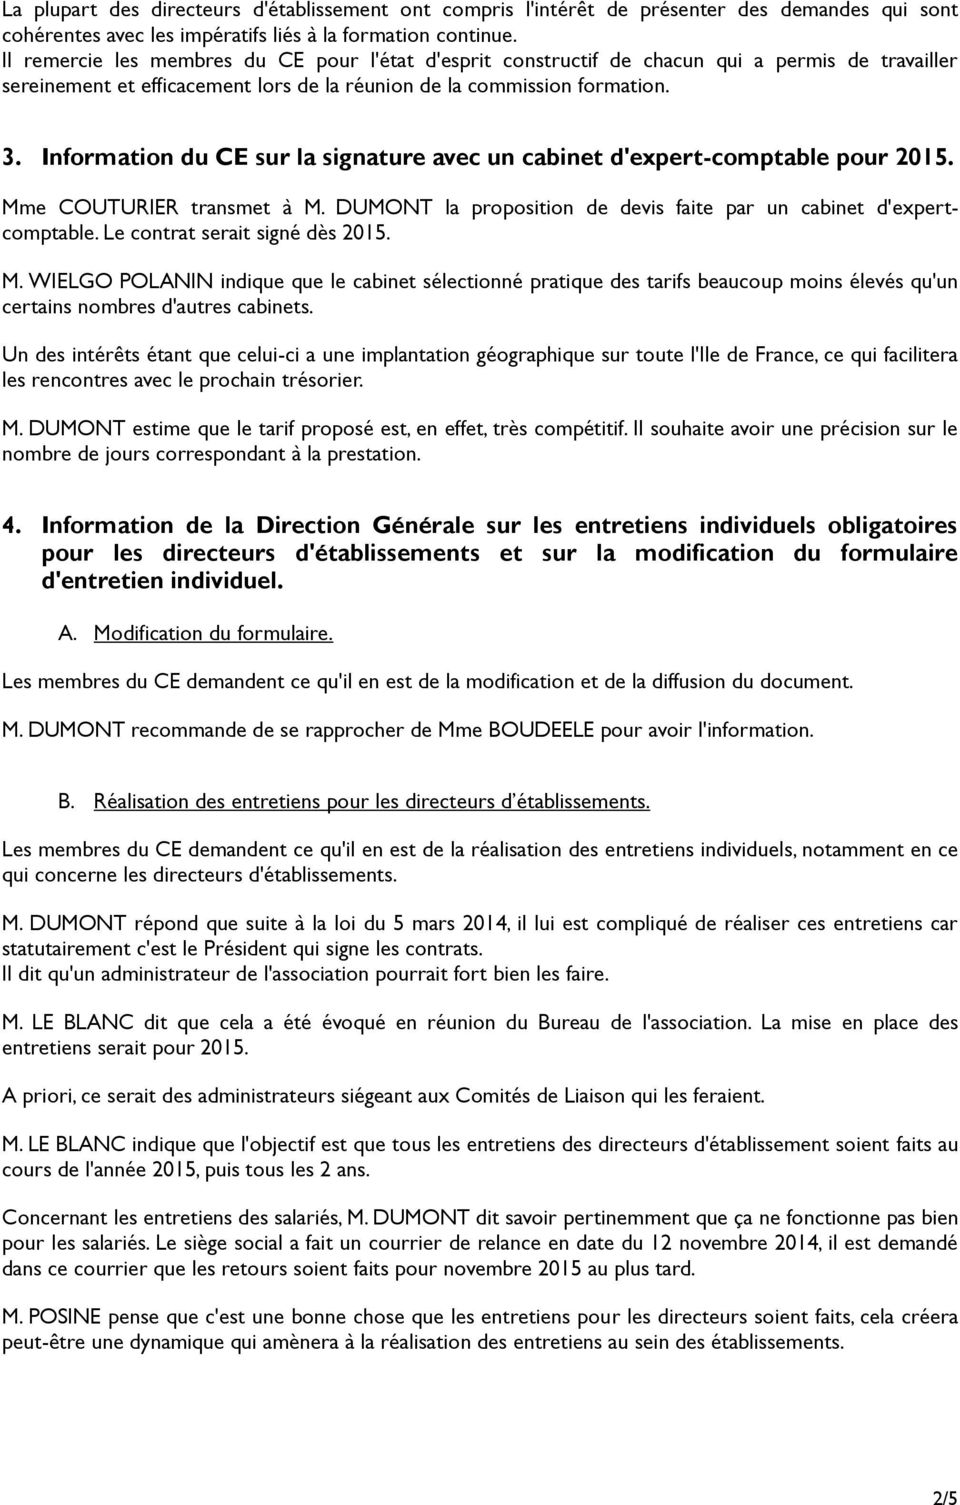 Information du CE sur la signature avec un cabinet d'expert-comptable pour 2015. Mme COUTURIER transmet à M. DUMONT la proposition de devis faite par un cabinet d'expertcomptable.